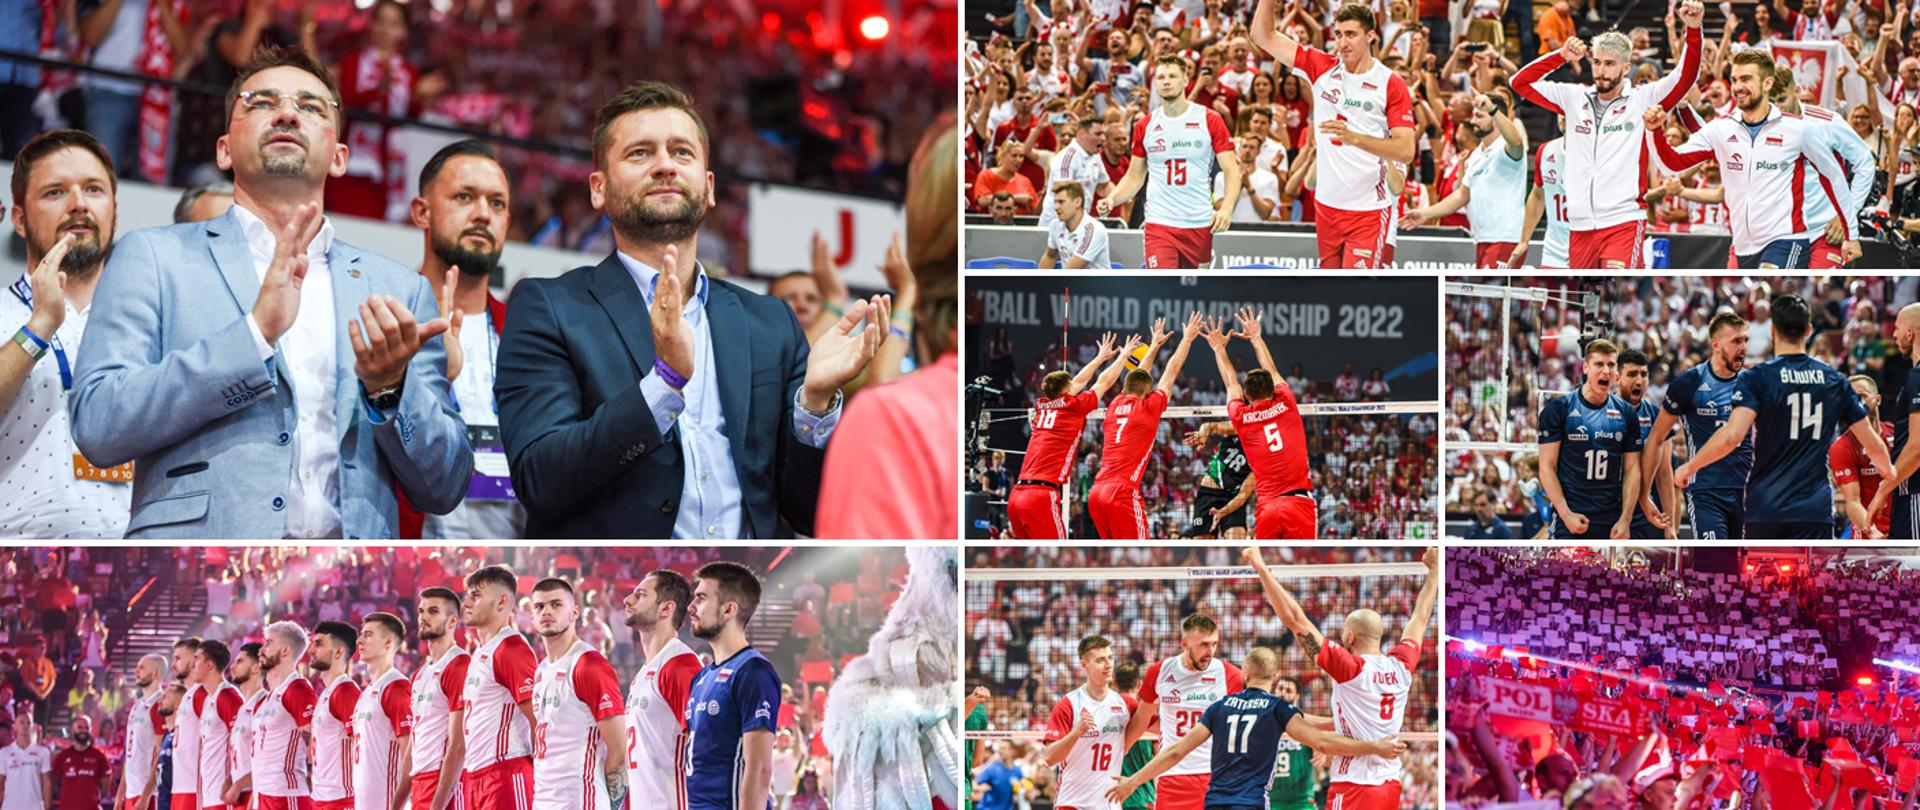 Biało-czerwoni z kompletem zwycięstw w pierwszej fazie MŚ siatkarzy rozgrywanych w Polsce i na Słowenii - kolaż zdjęć